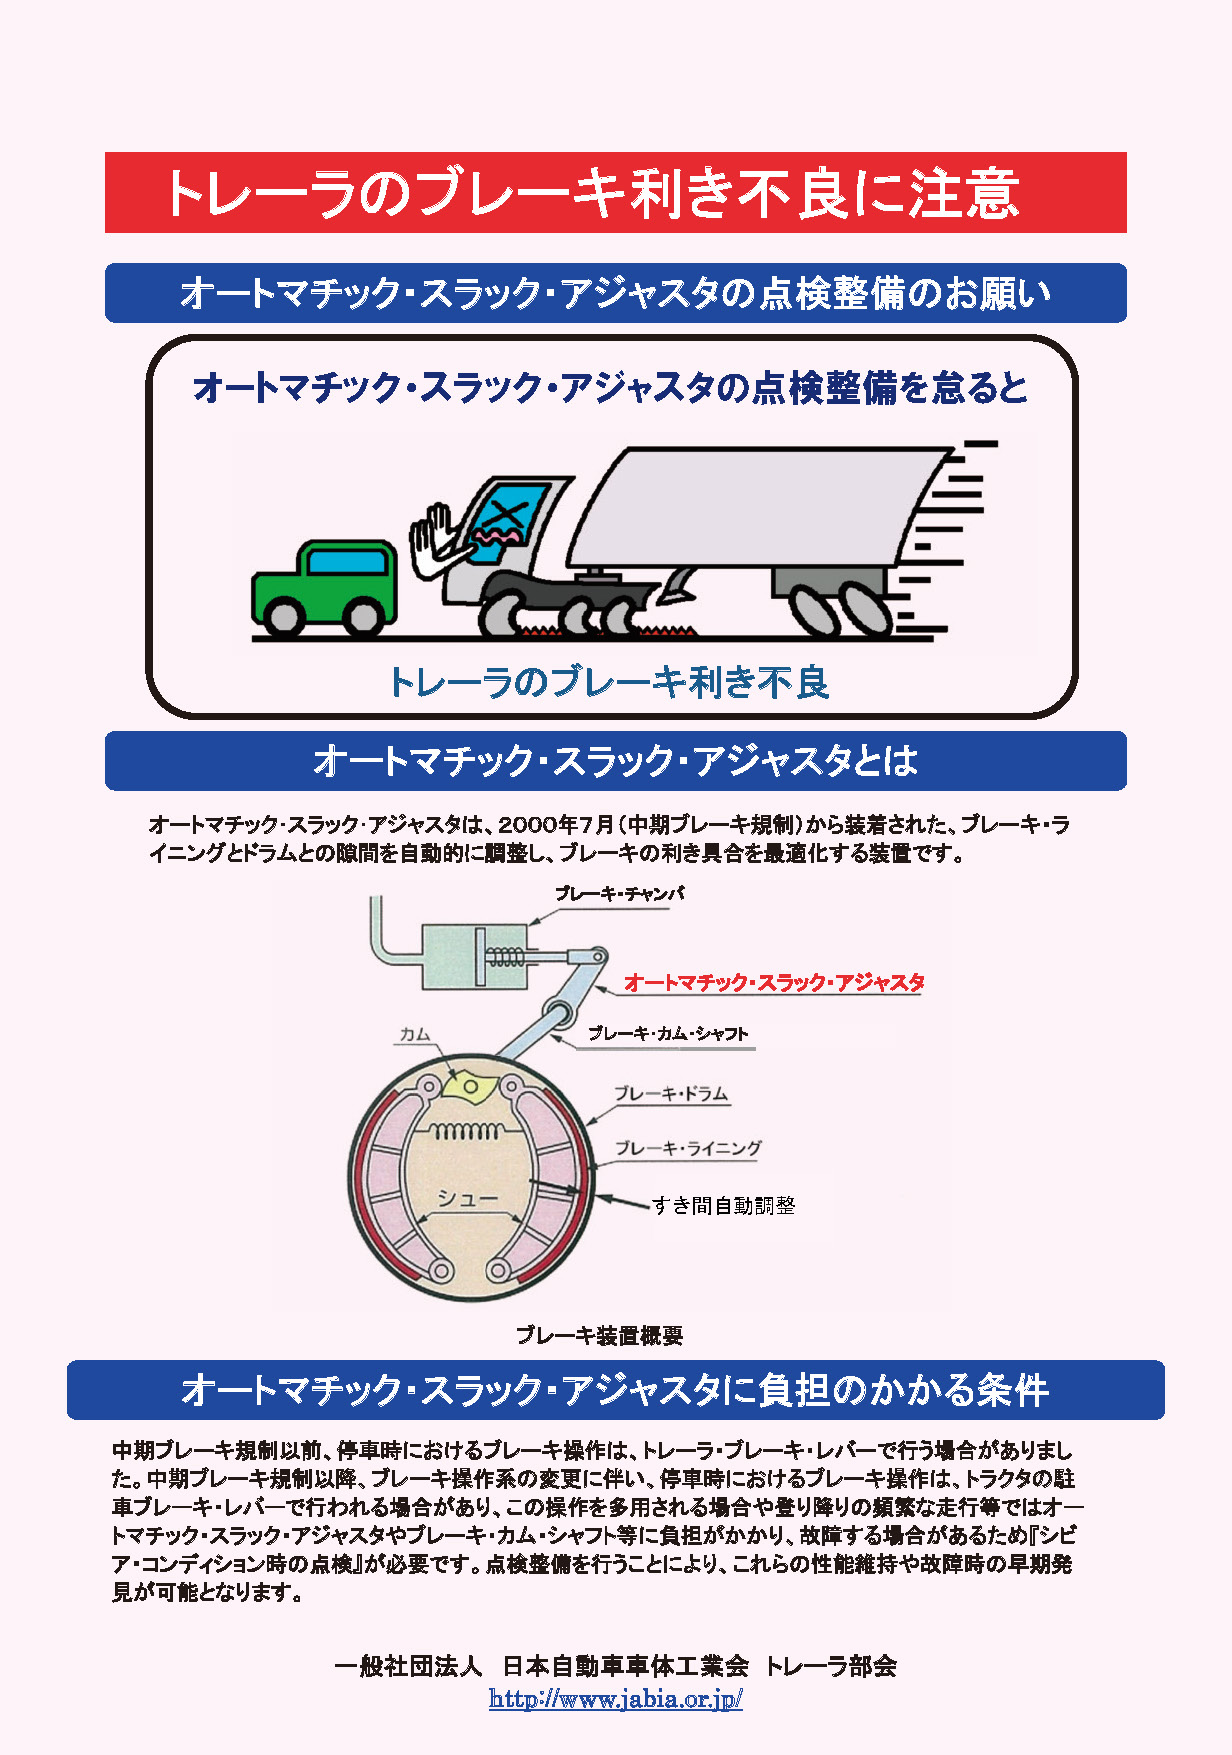 “トレーラのブレーキ利き不良に注意”PDF